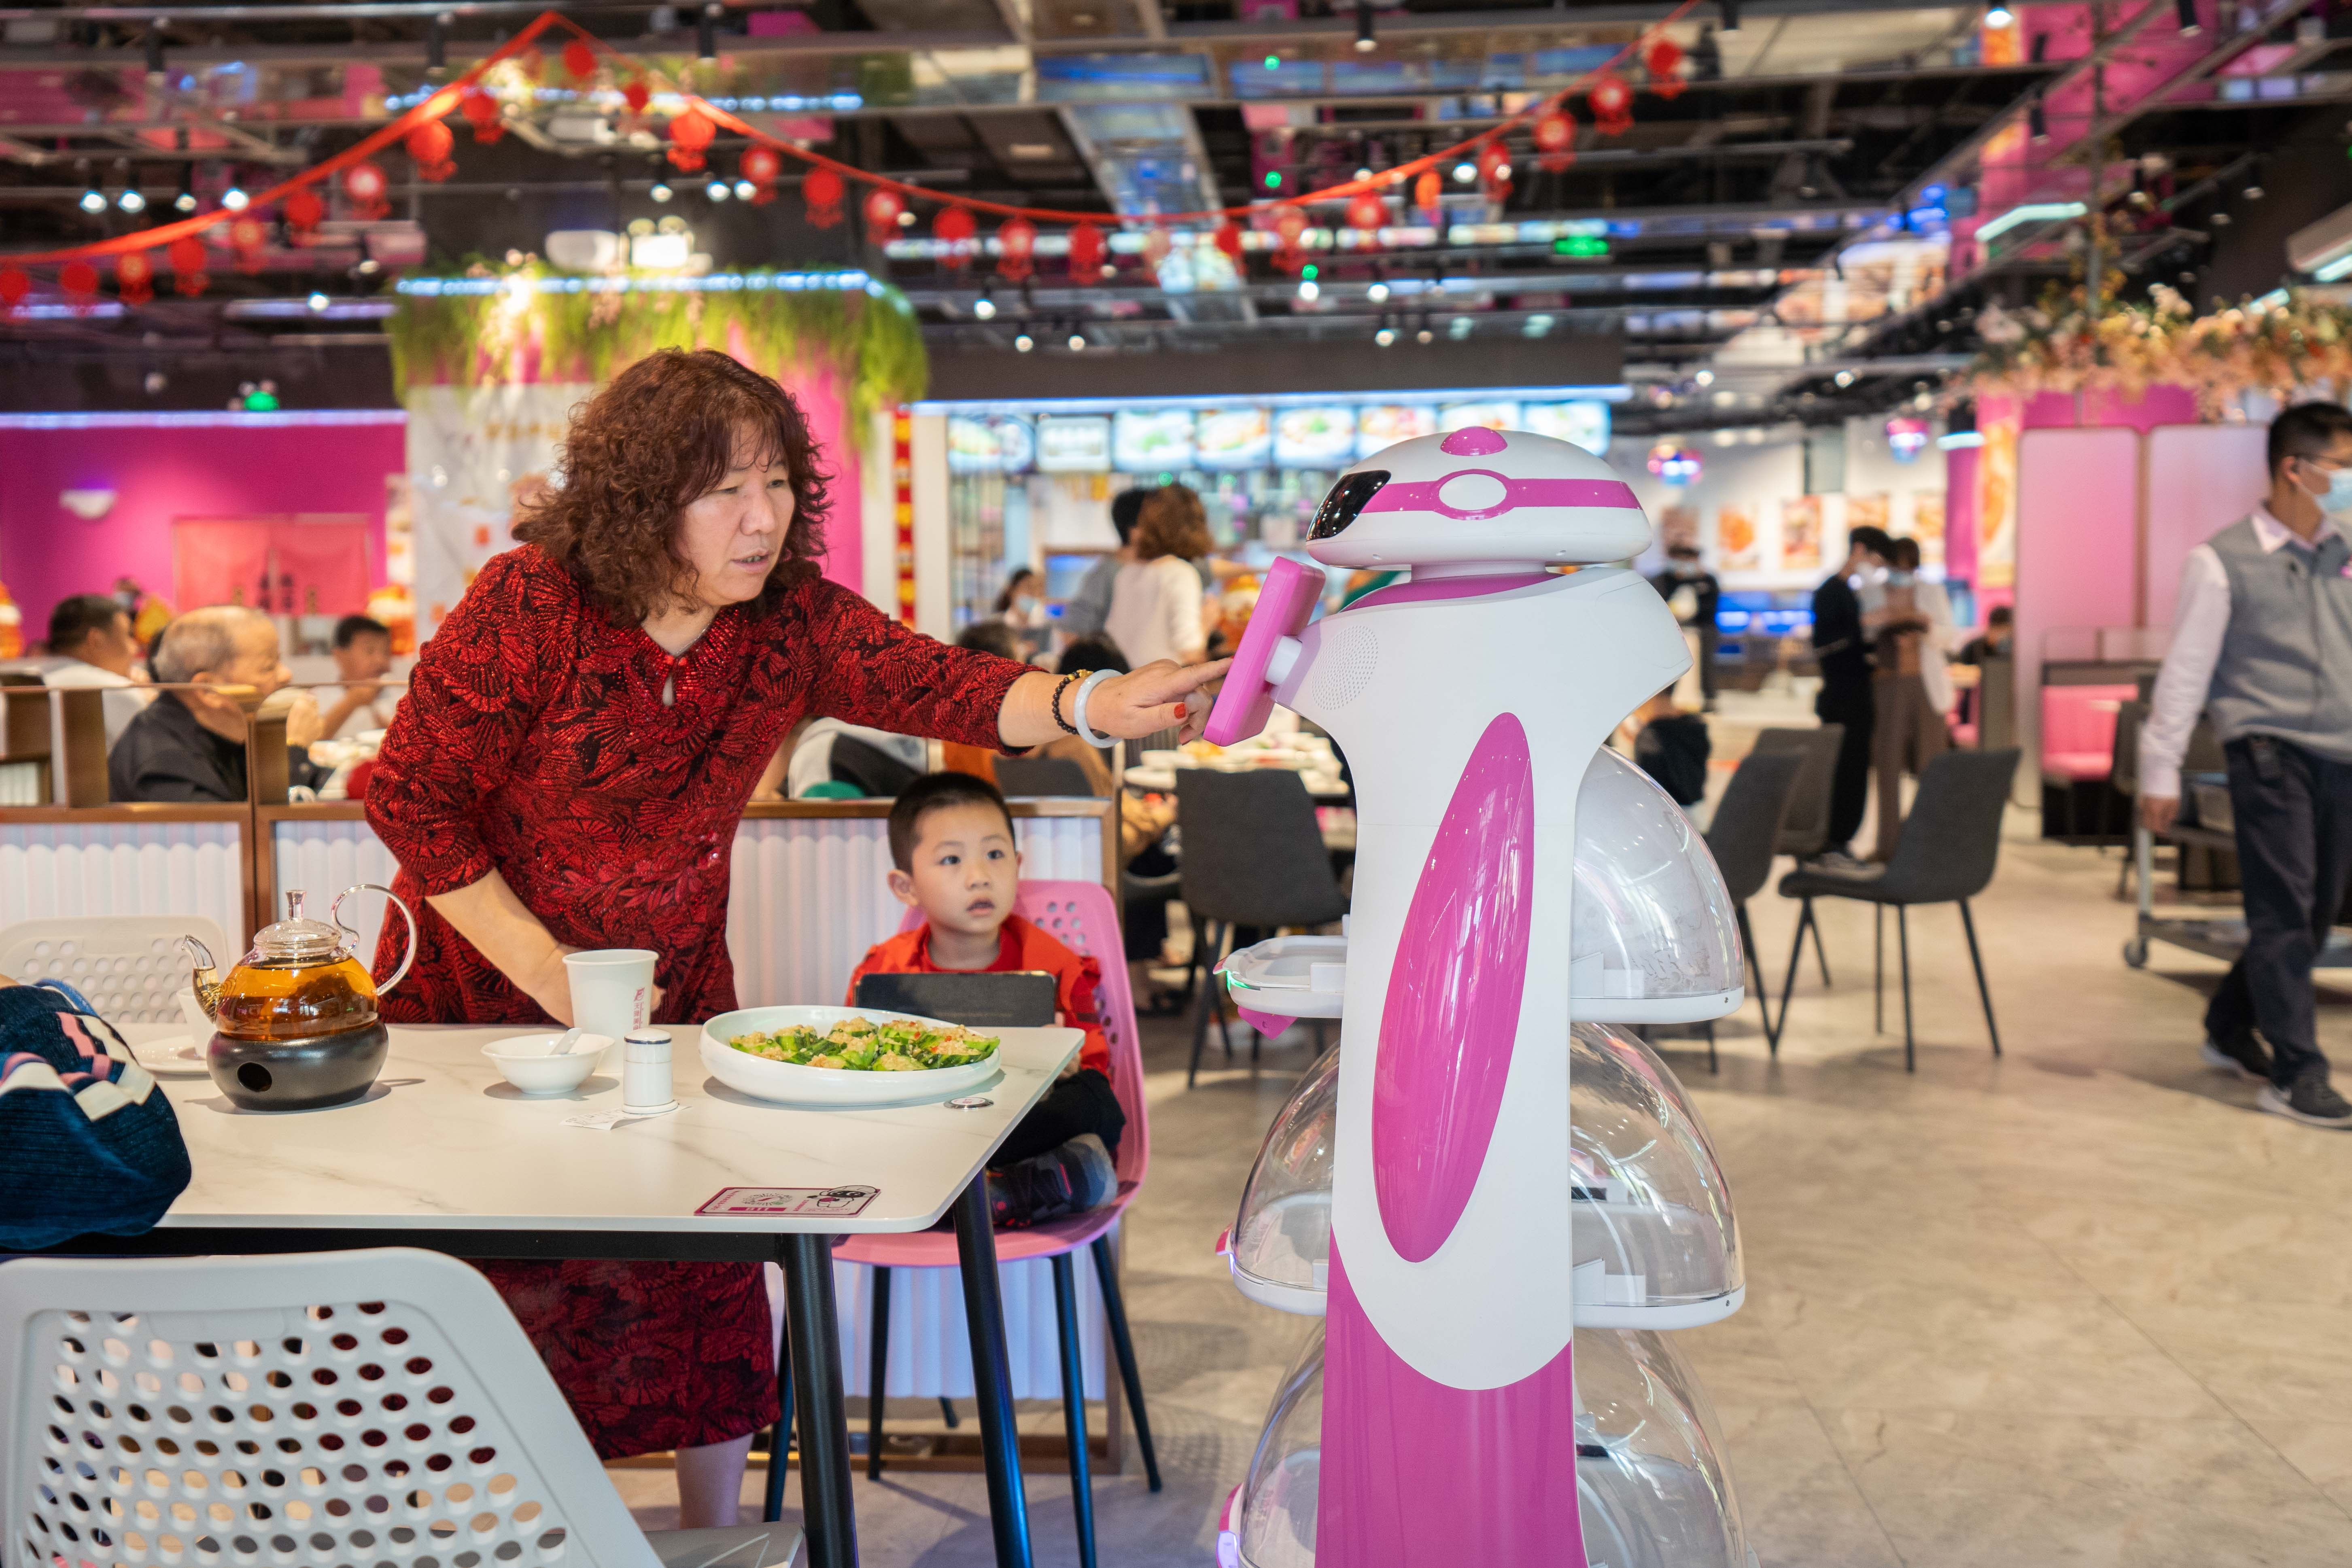 “机器人做菜”时代来临 碧桂园推出系统化机器人餐厅-36氪